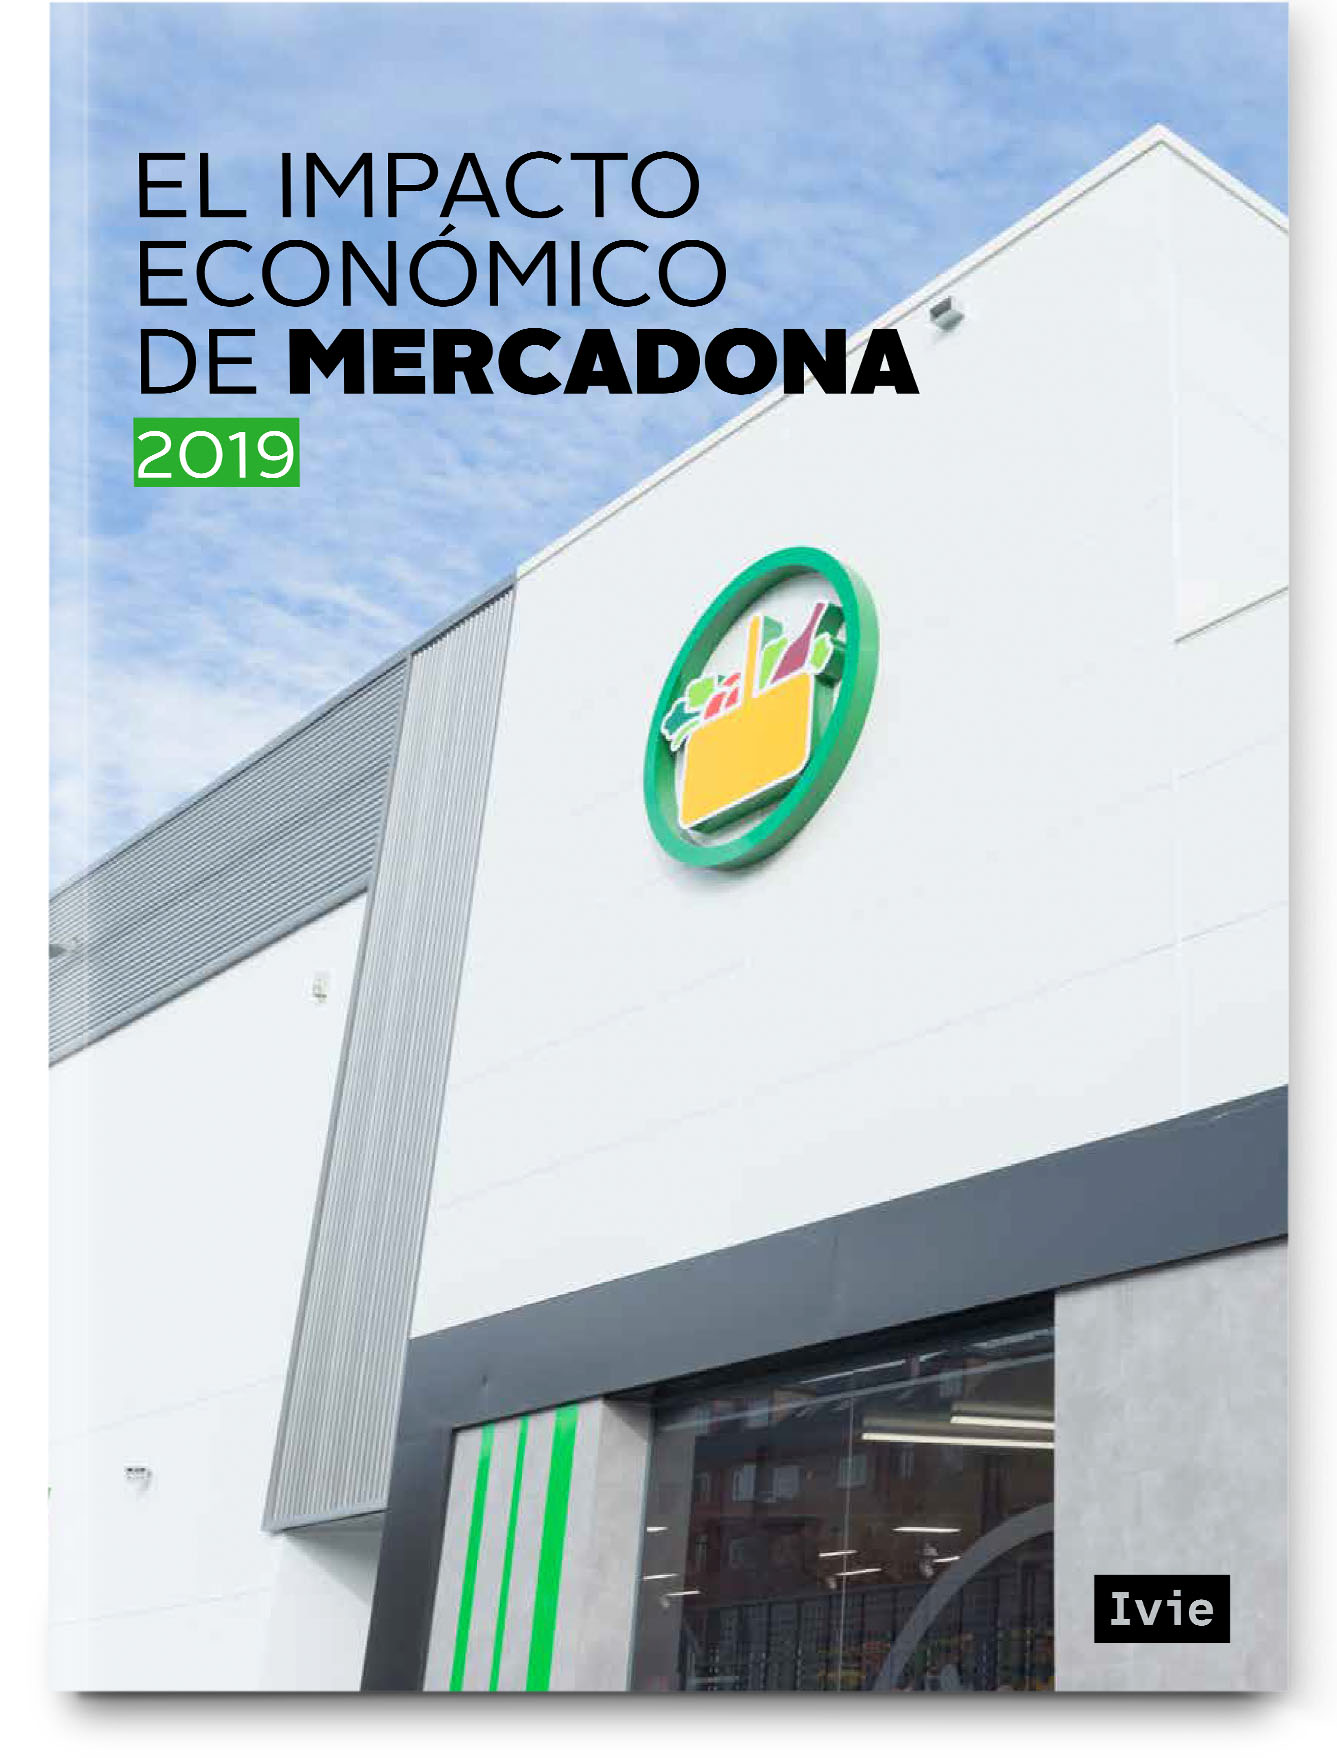 Economic impact of Mercadona 2019